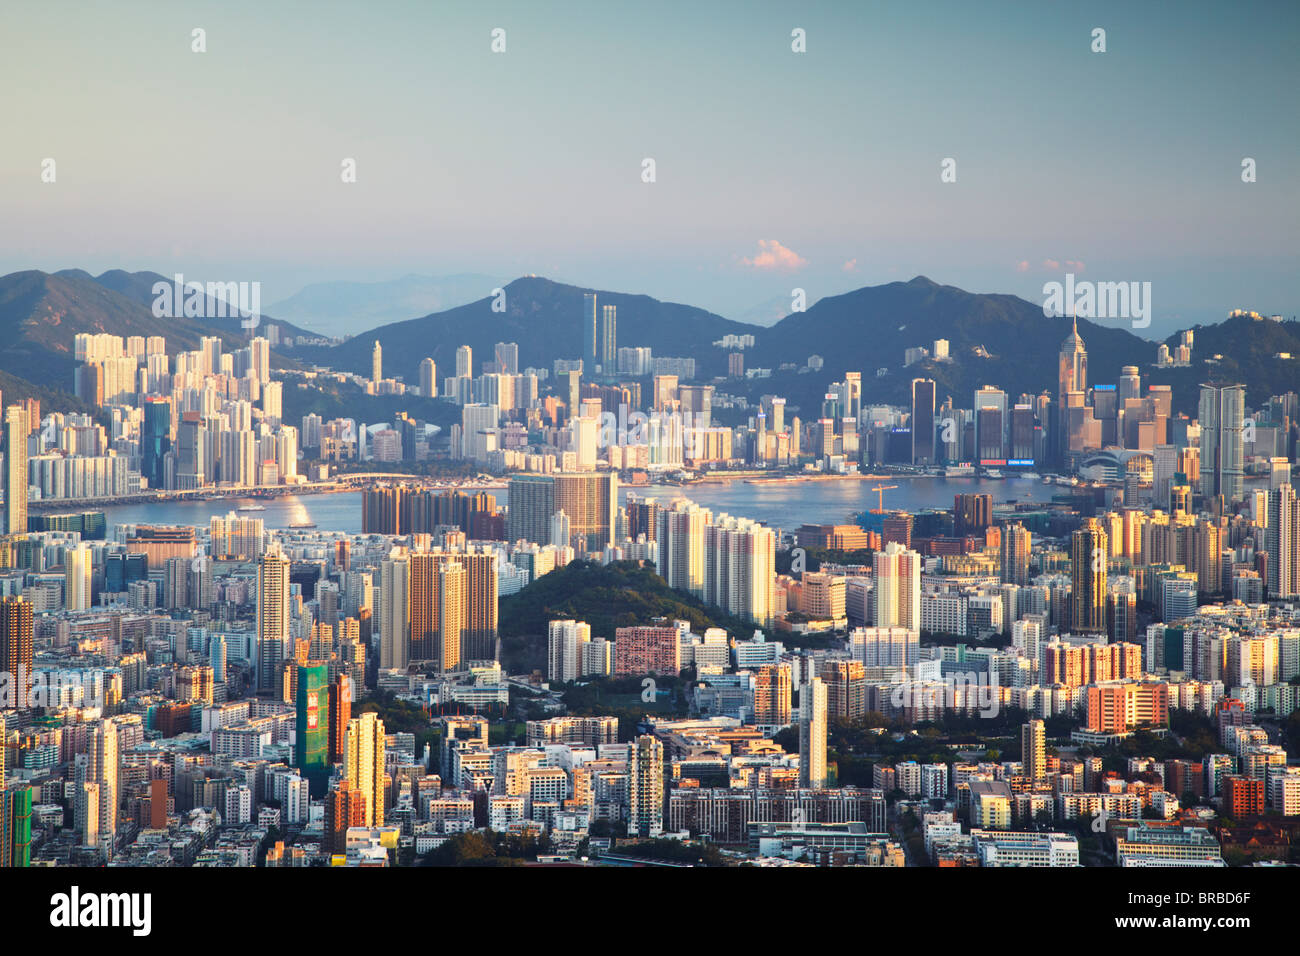 View of Kowloon and Hong Kong Island from Lion Rock, Kowloon, Hong Kong, China Stock Photo